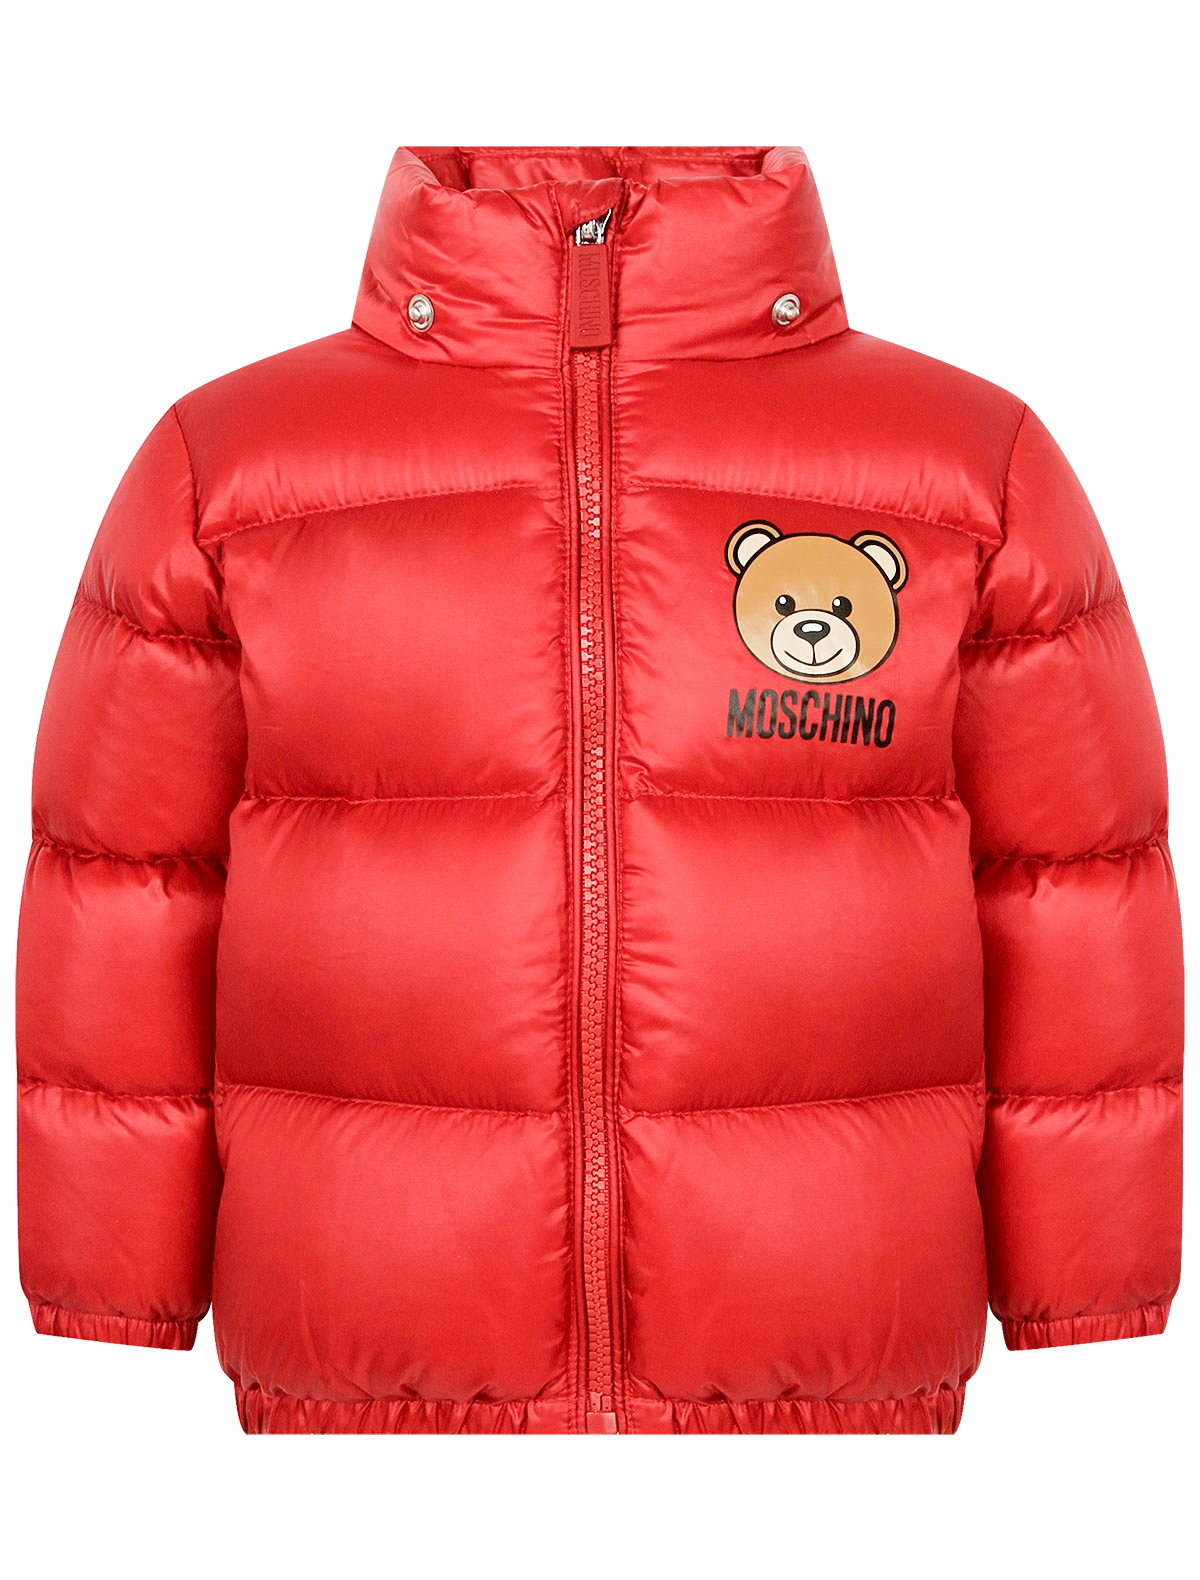 Куртка Moschino 2356900, цвет красный, размер 2 1074529180634 - фото 3